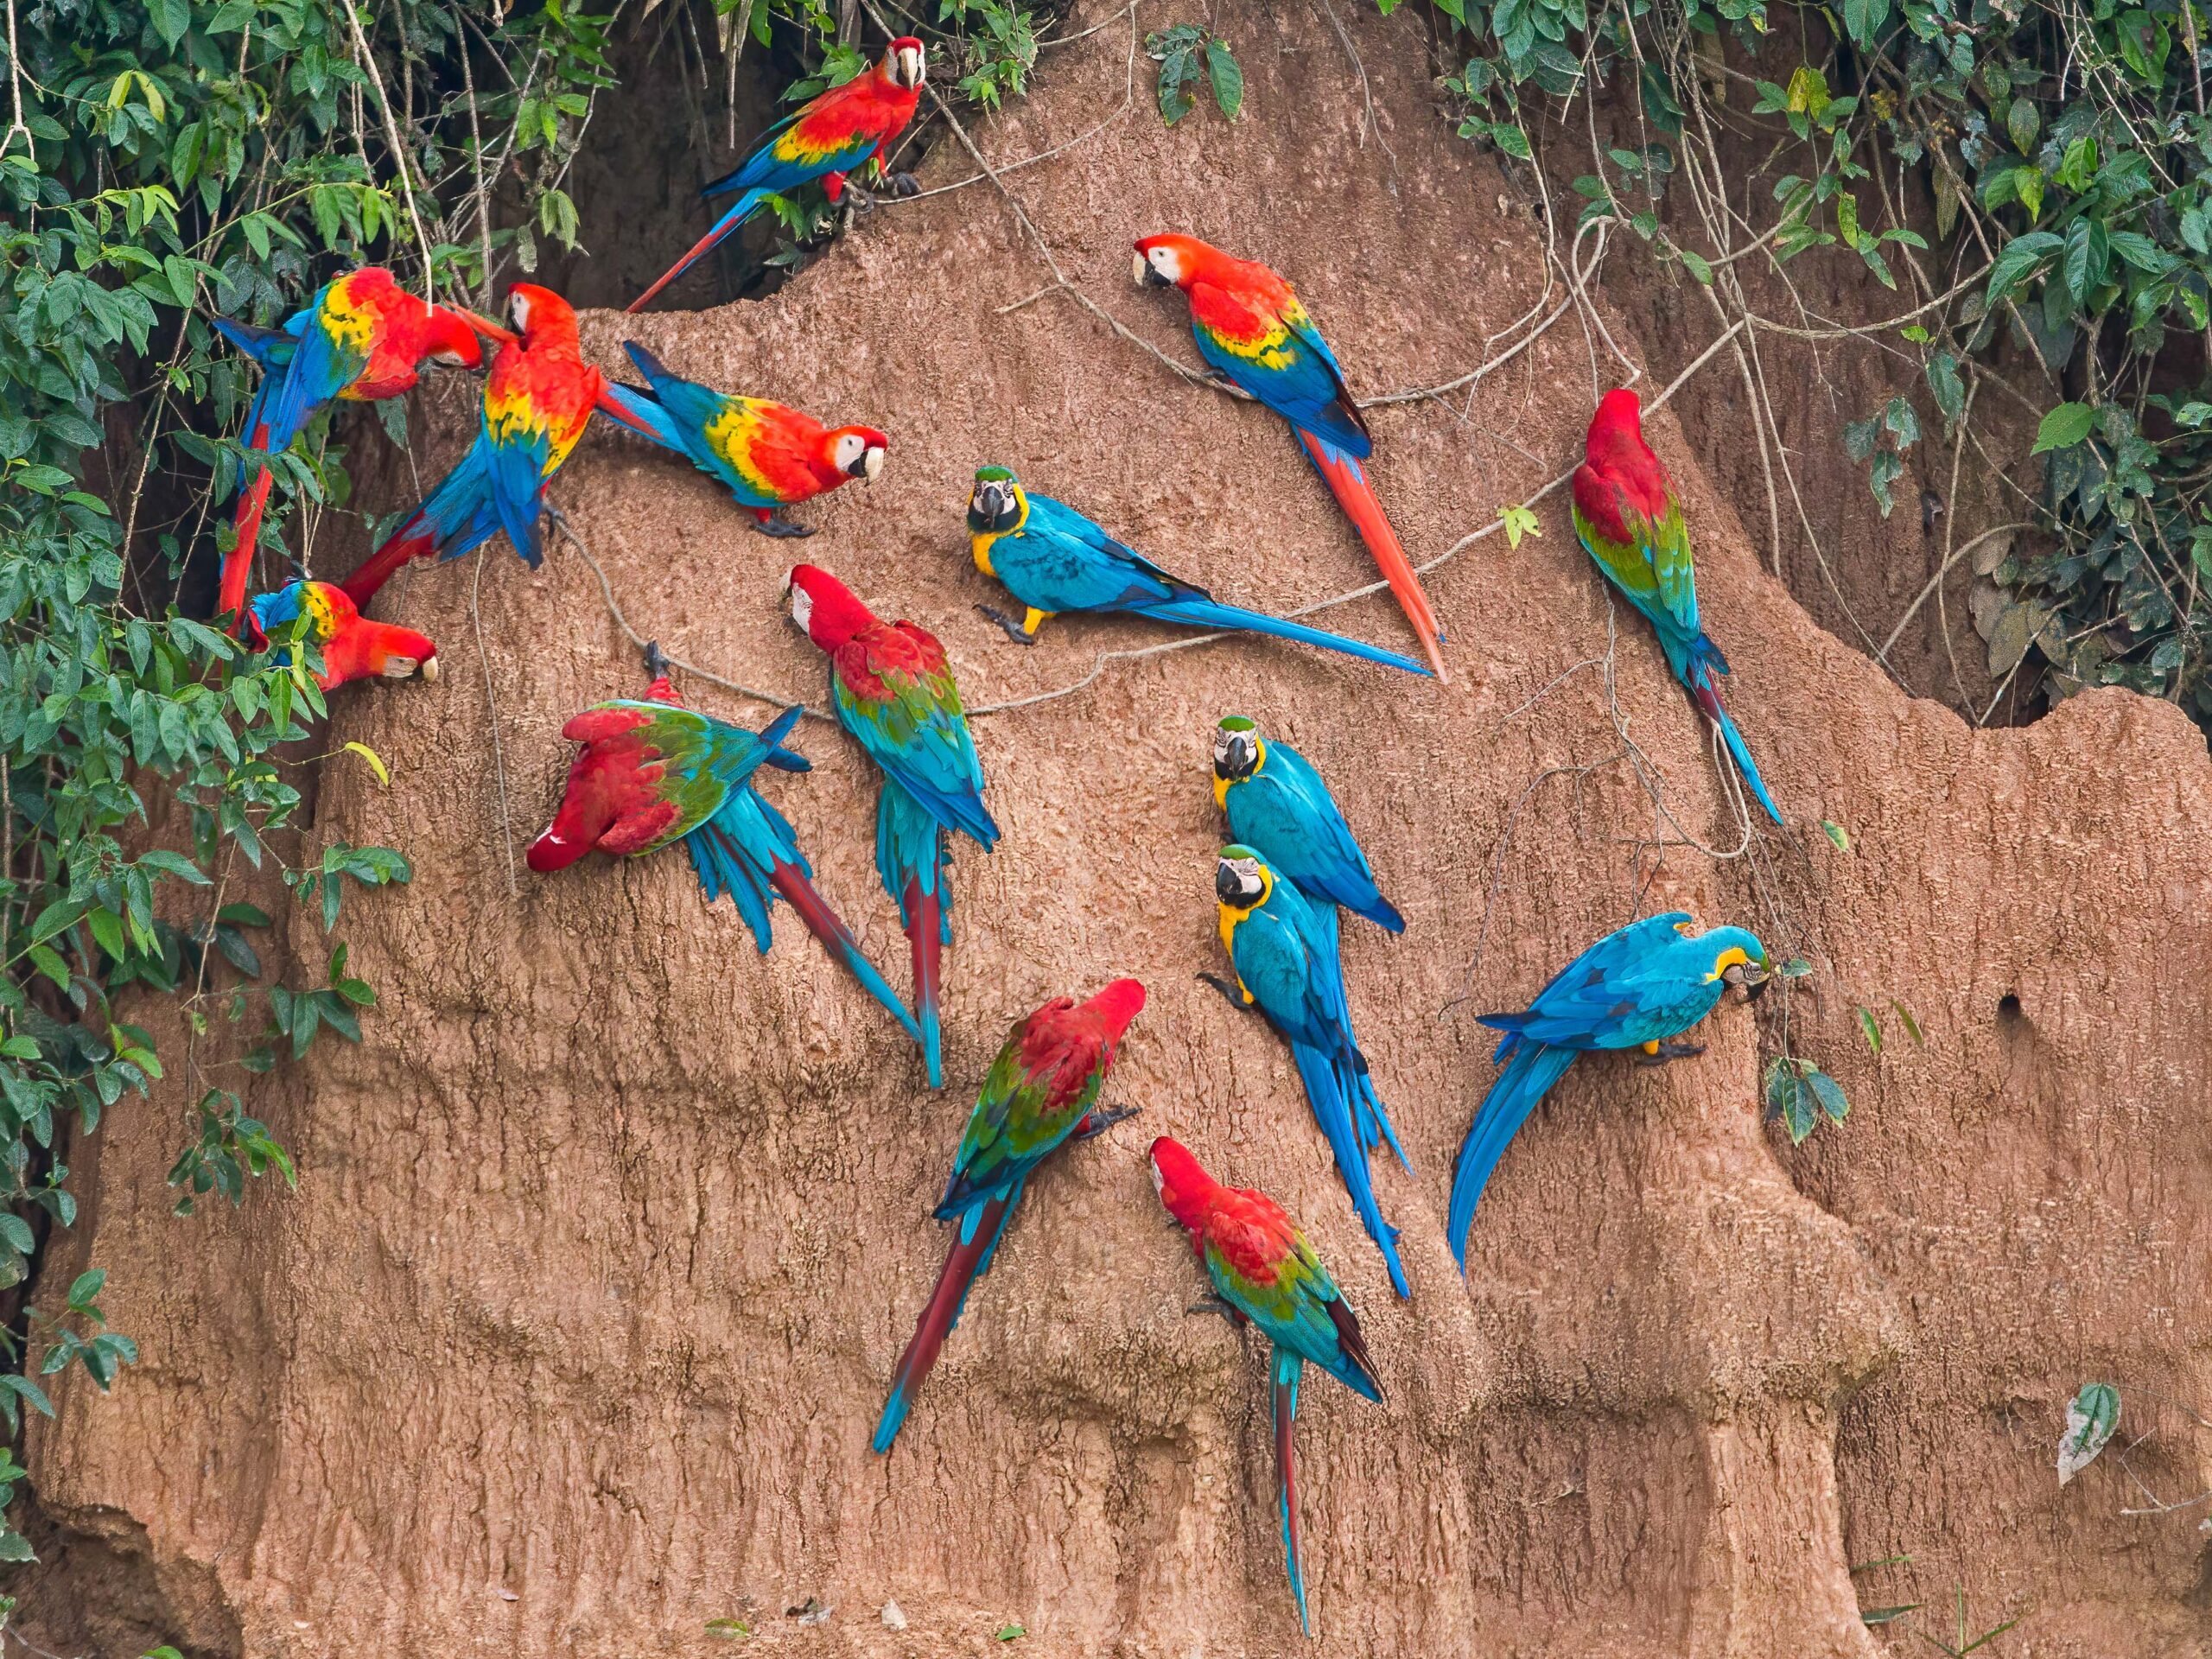 Macaws at the Chuncho Clay Lick